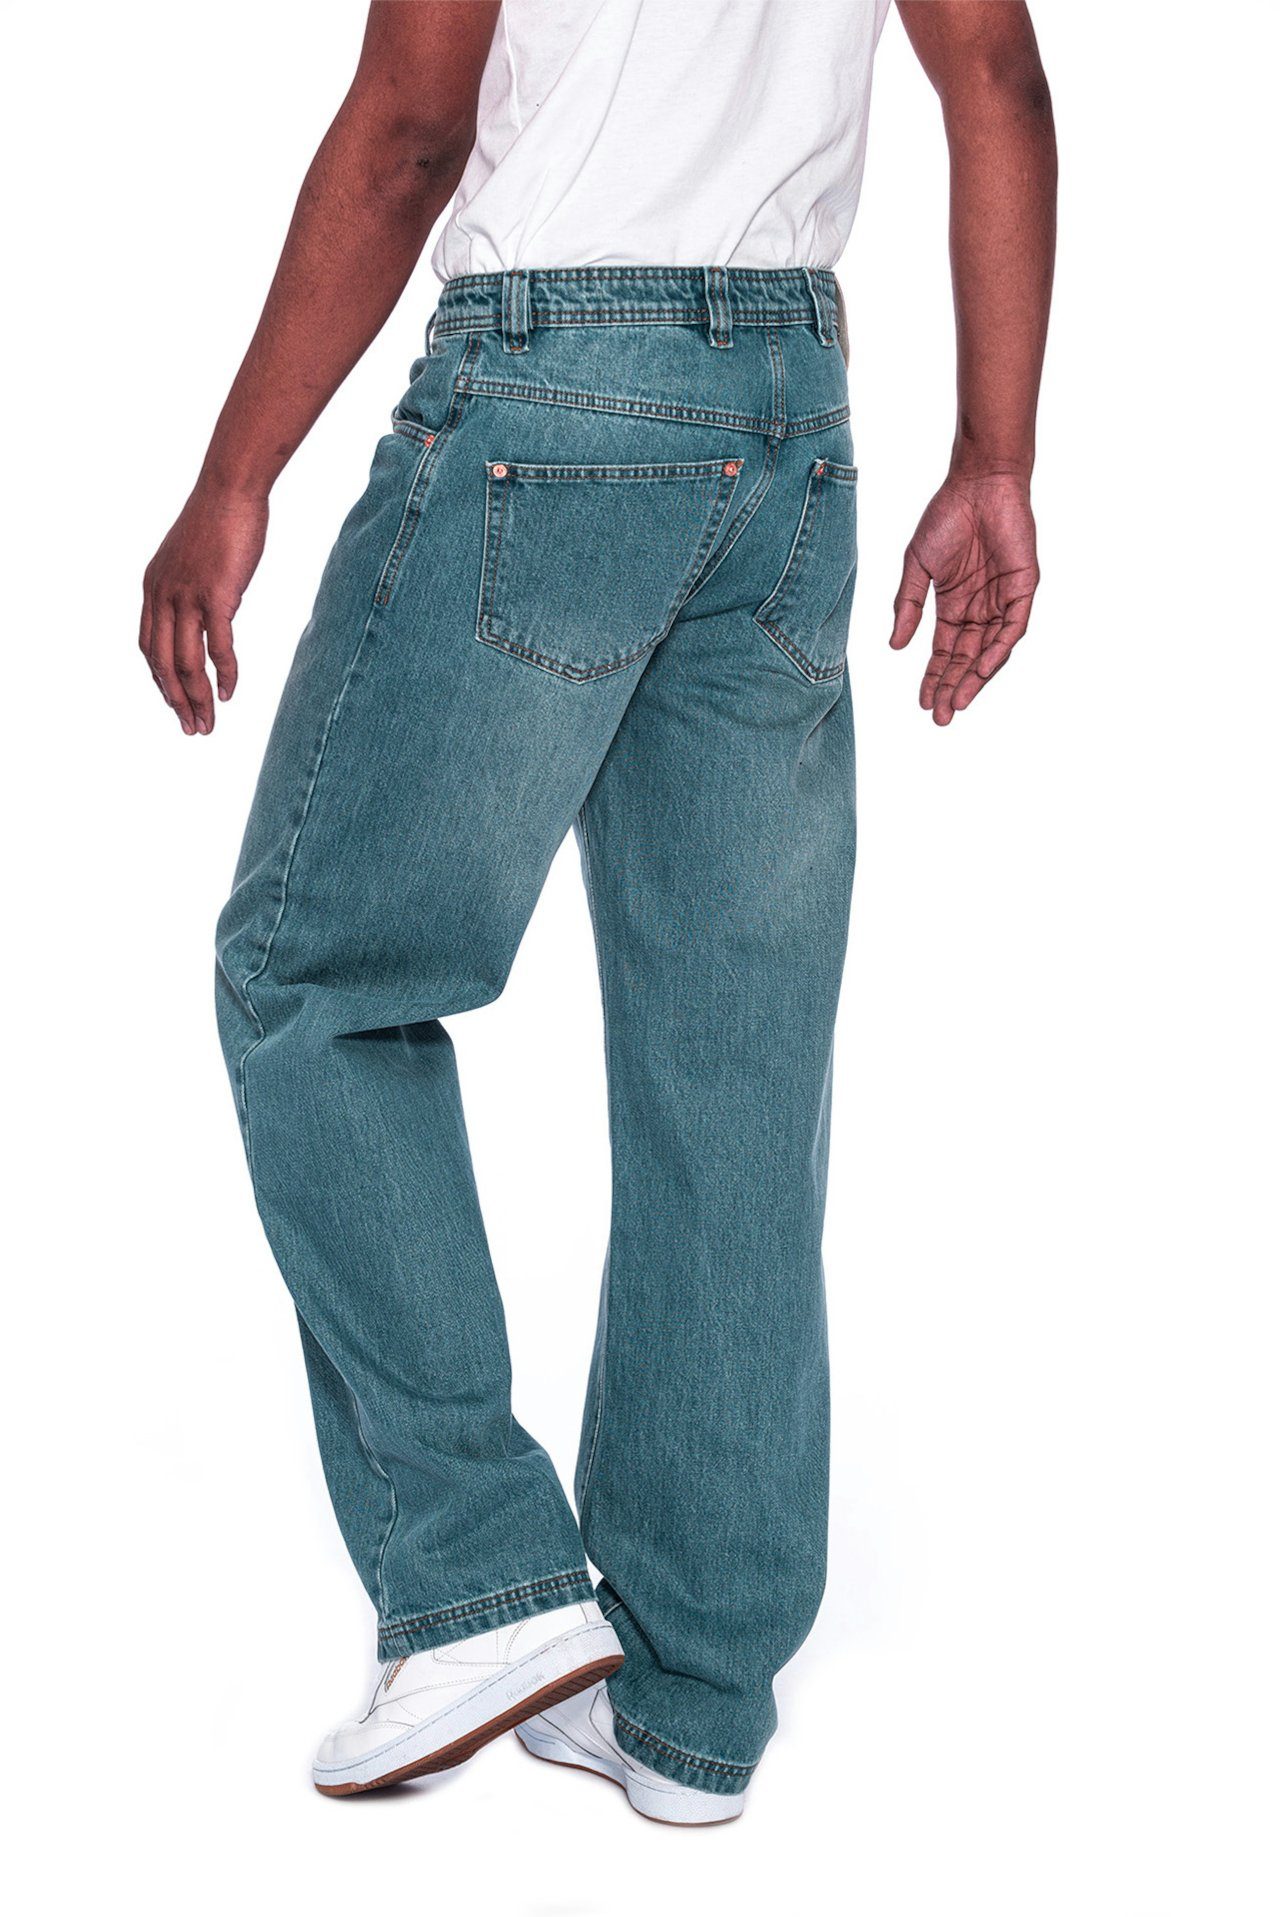 Jeans lässiger Zicco PICALDI Fit, Jeans 474 Baggy Straight Schnitt Enemy Weite Leg, Gerader